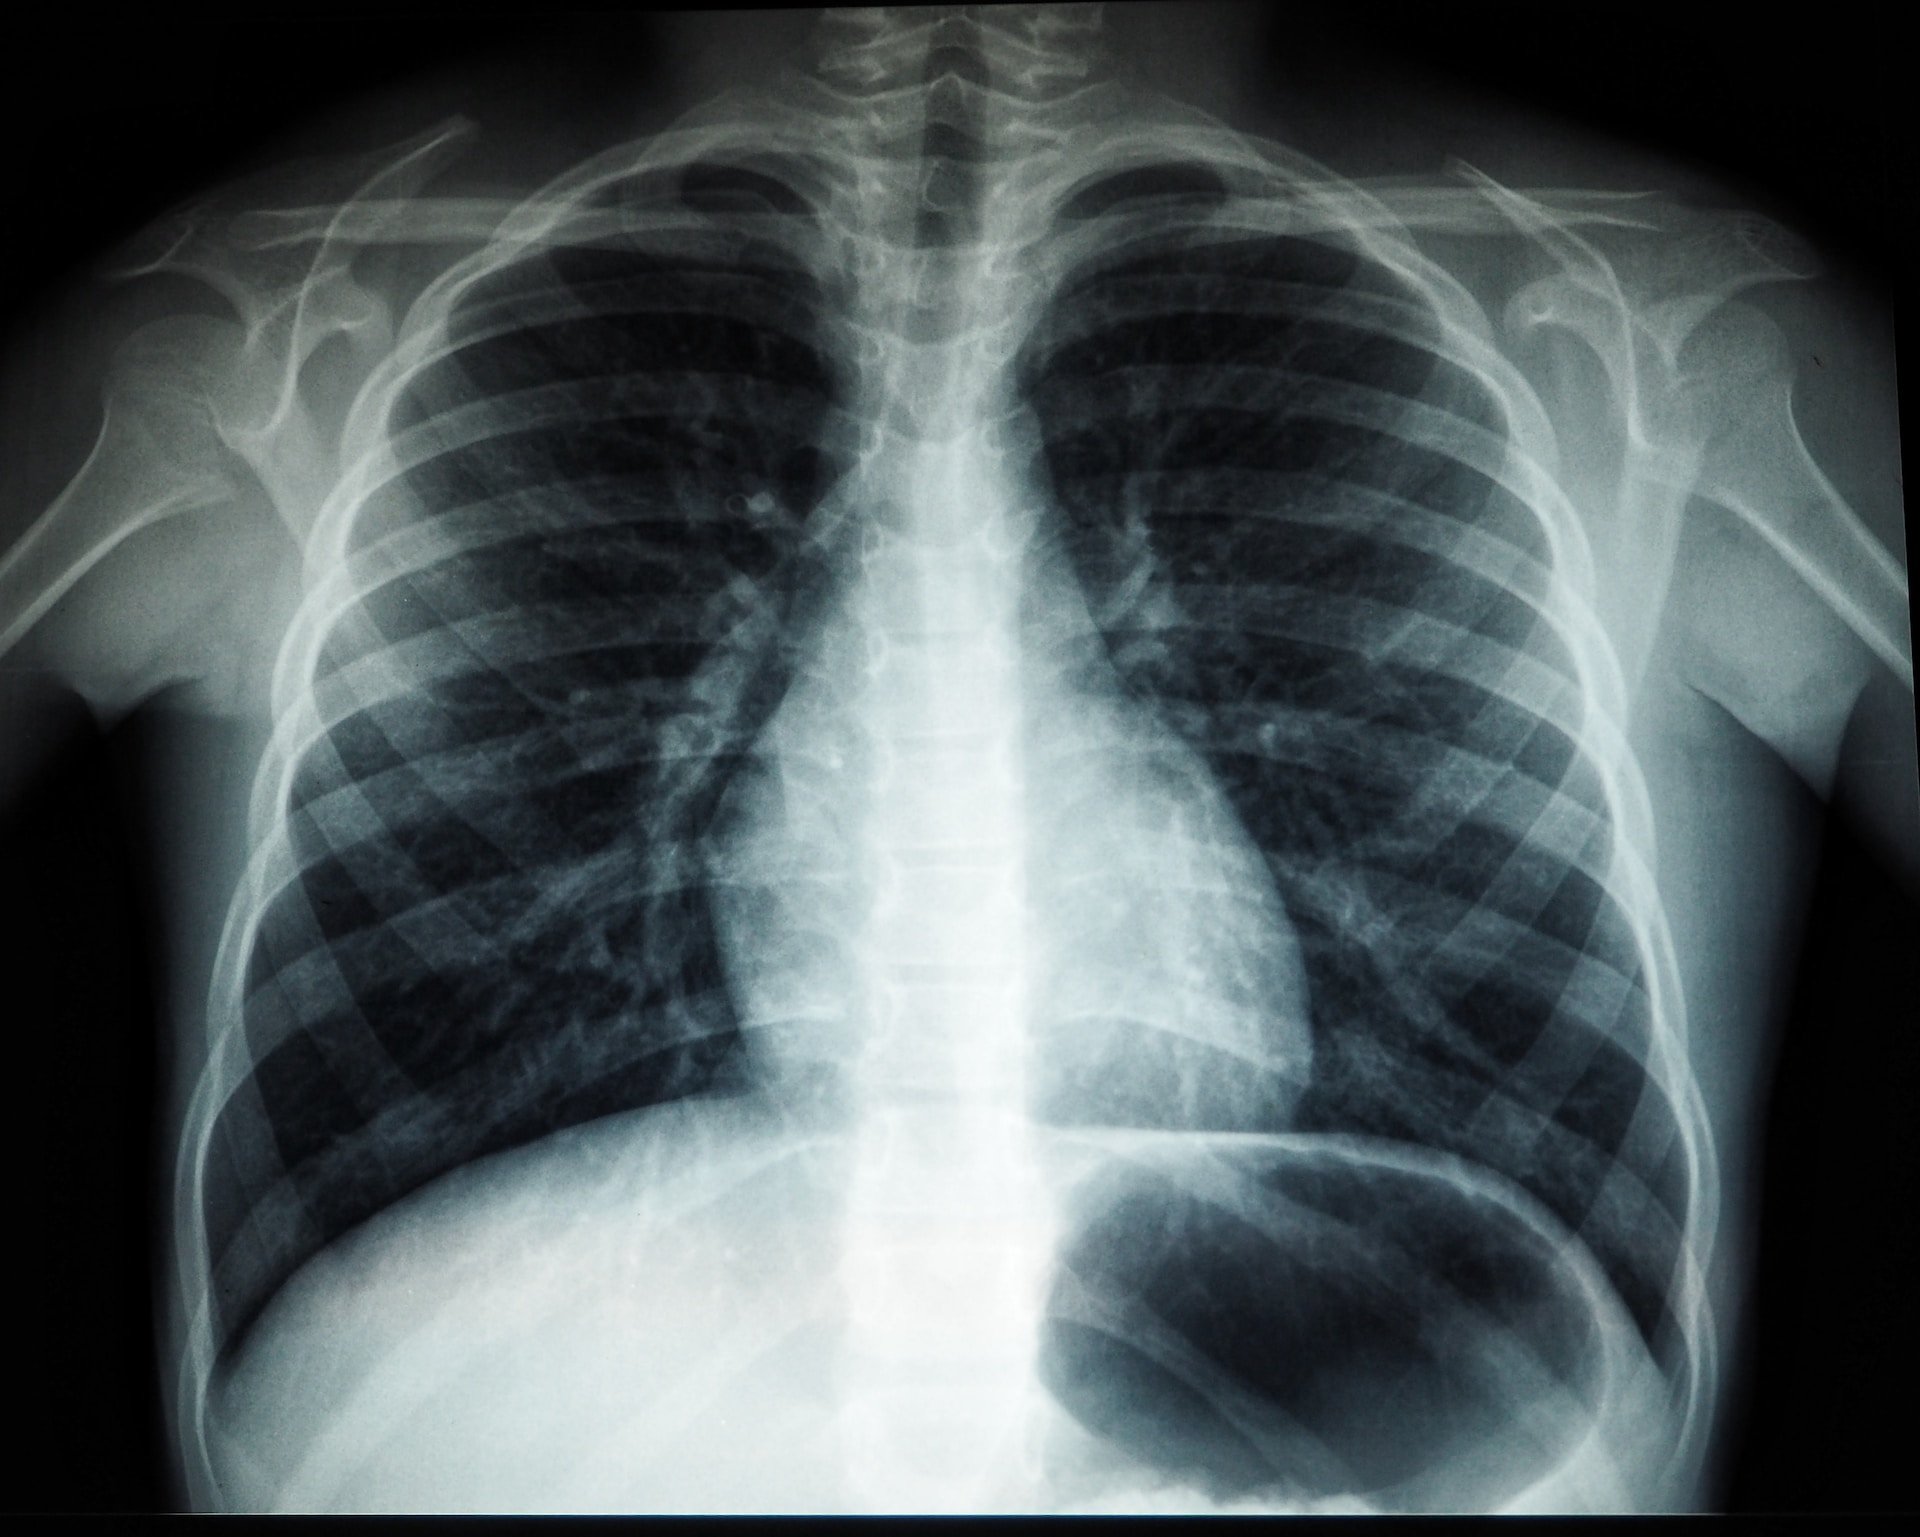 За три первых месяца 2023 года у 2,5 тысячи жителей Удмуртии выявили болезни органов дыхания